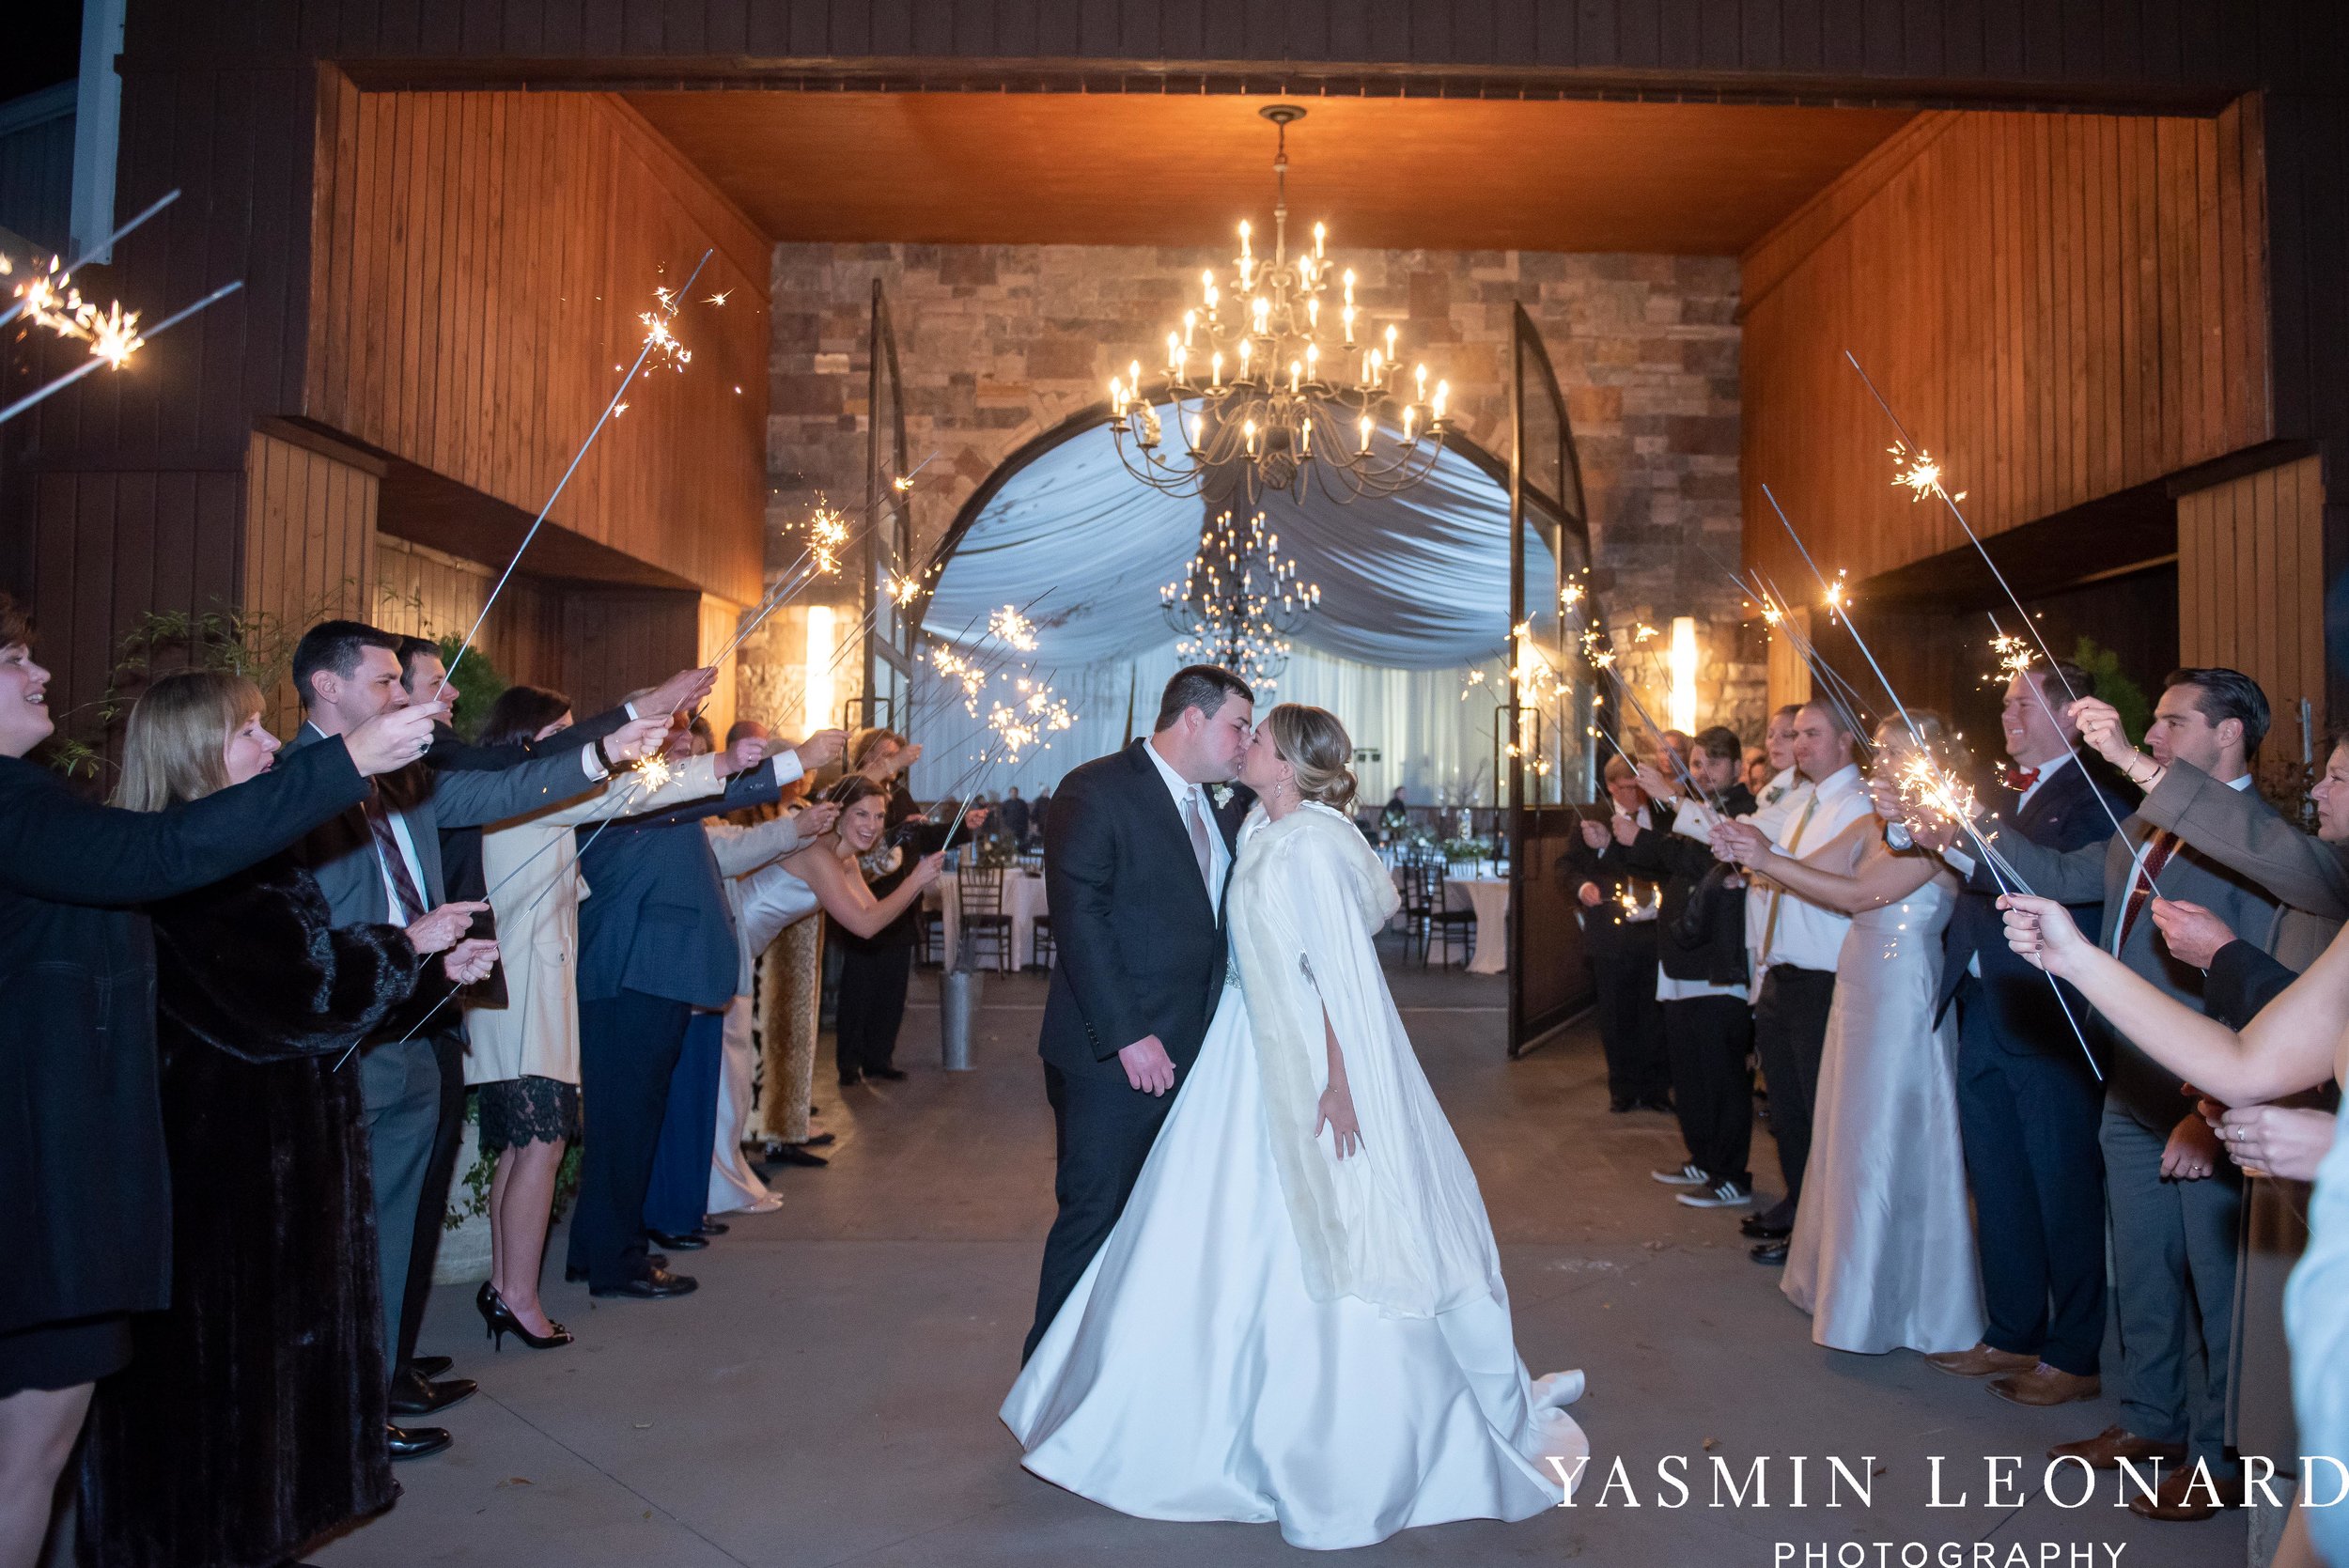 Adaumont Farm - Wesley Memorial Weddings - High Point Weddings - Just Priceless - NC Wedding Photographer - Yasmin Leonard Photography - High Point Wedding Vendors-77.jpg